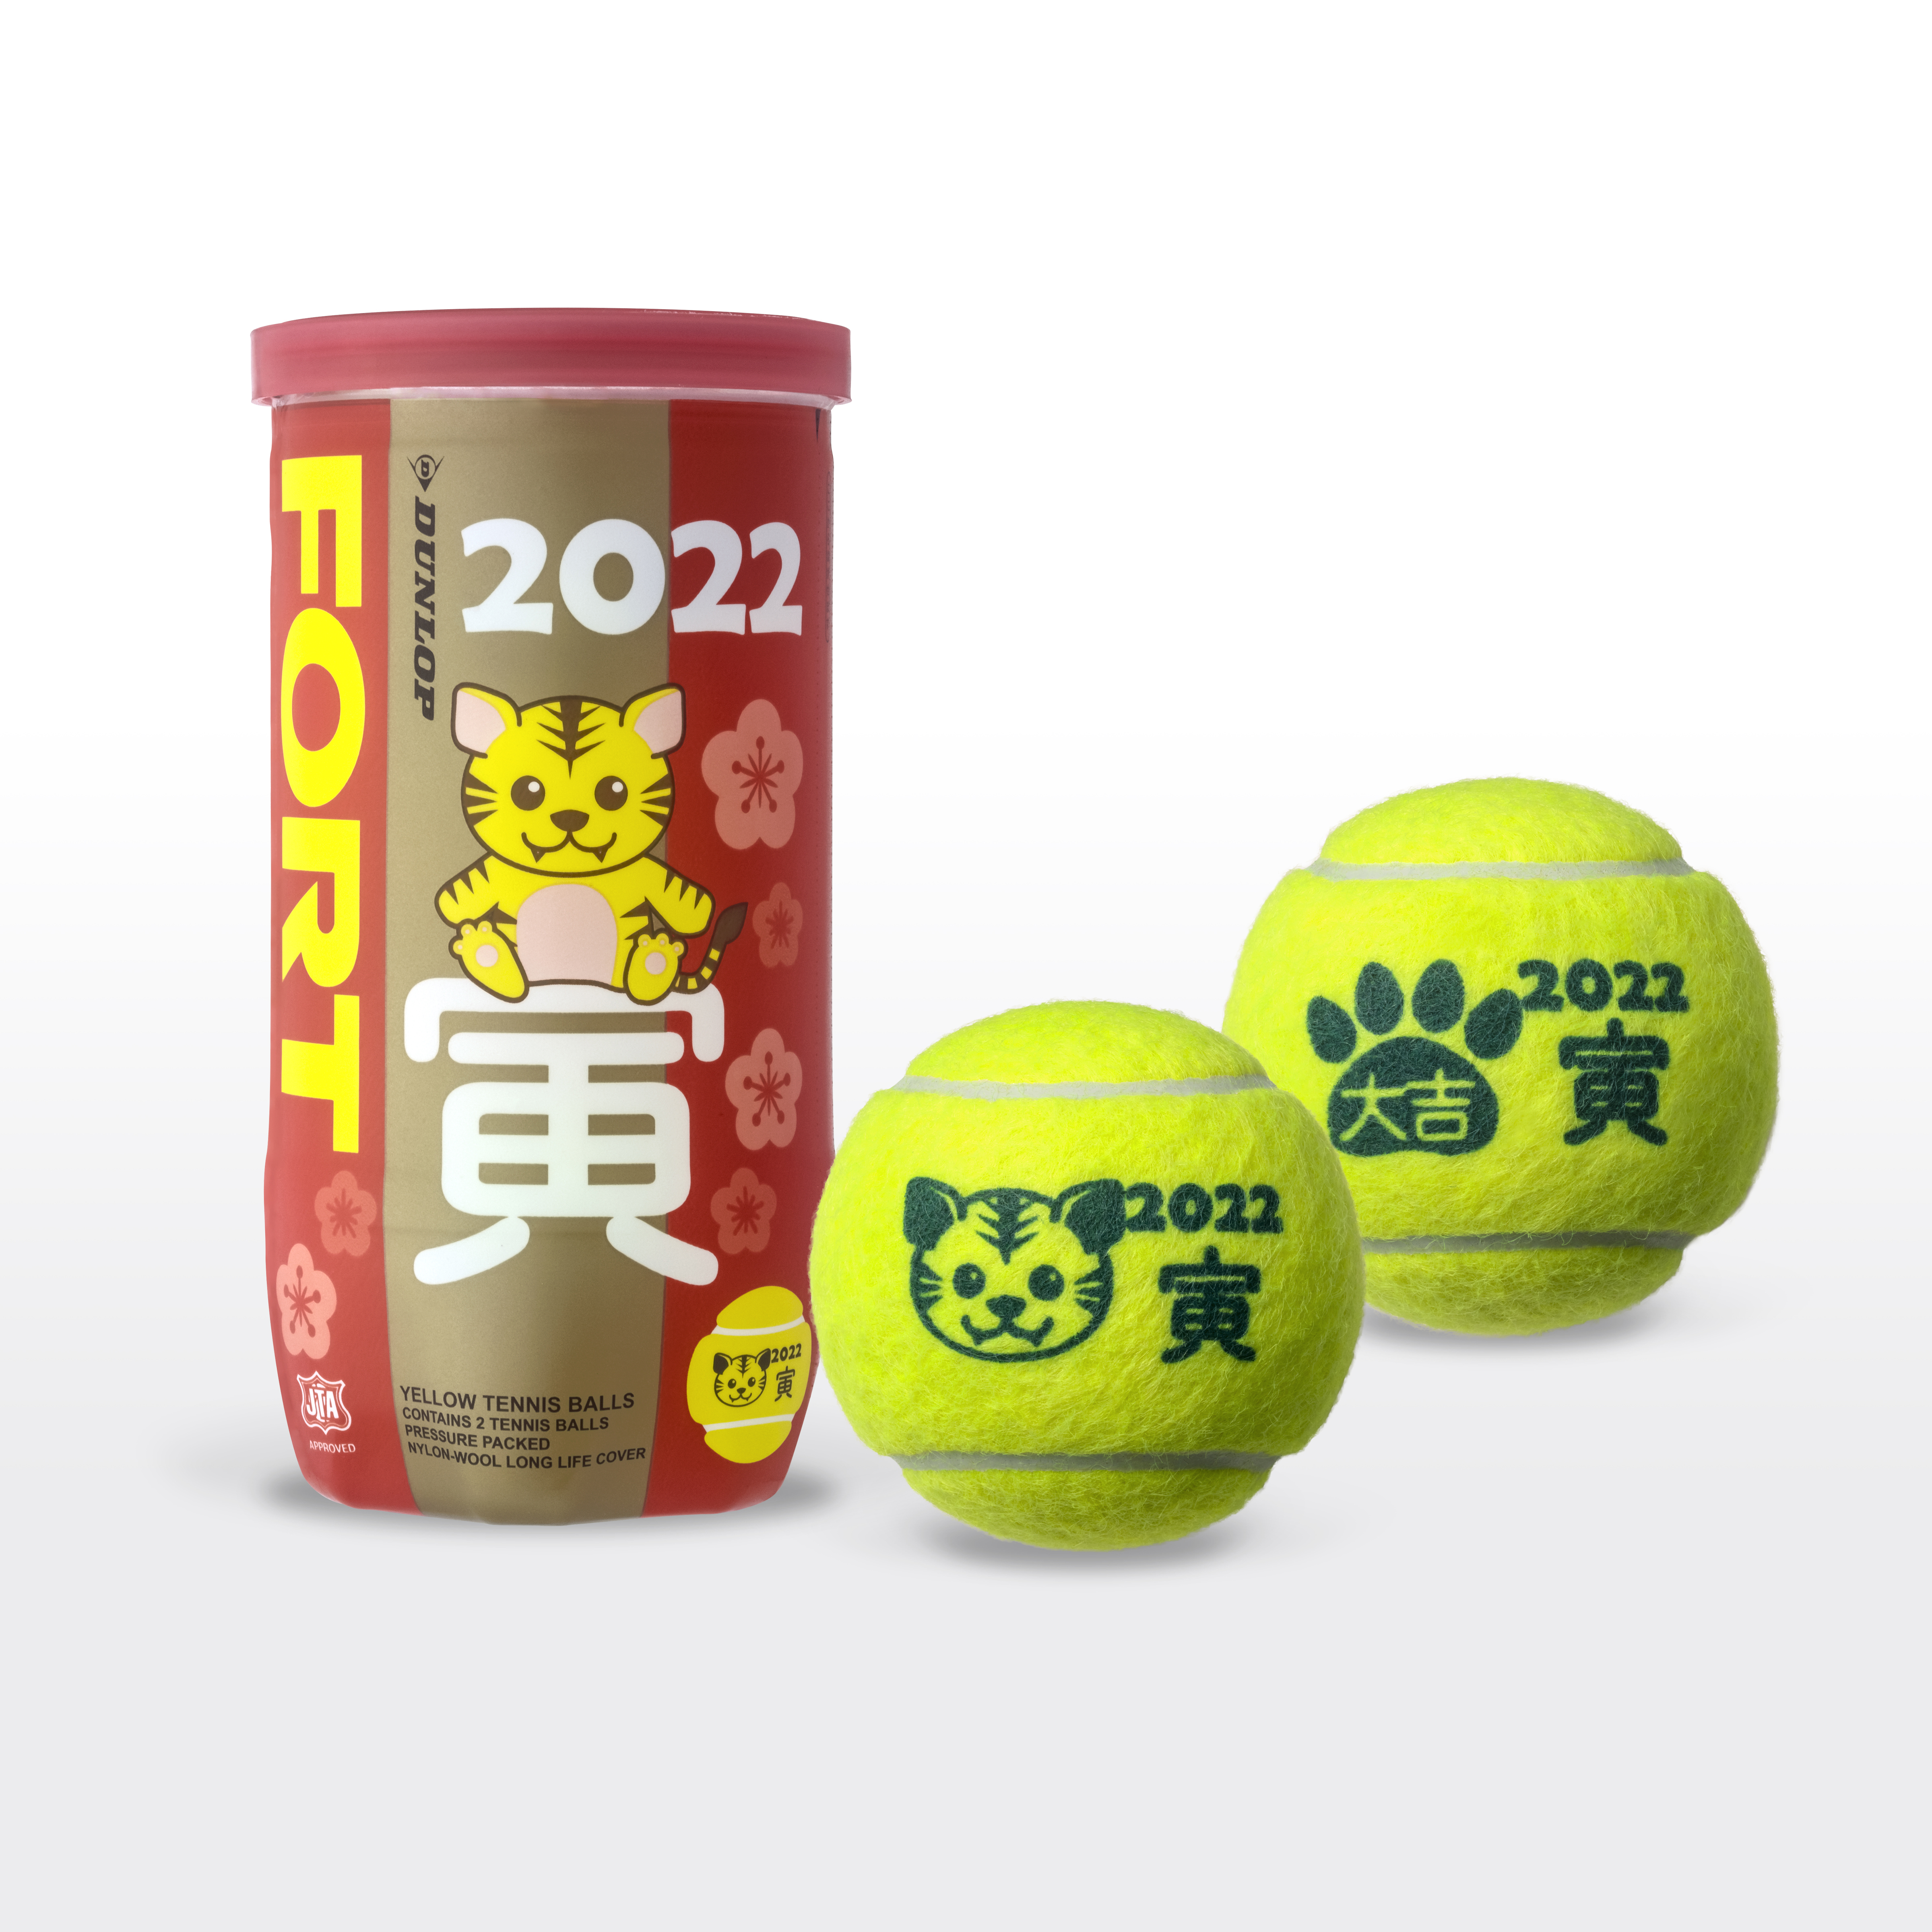 硬式テニス・ソフトテニスの干支ボールを数量限定で新発売 | NEWSCAST